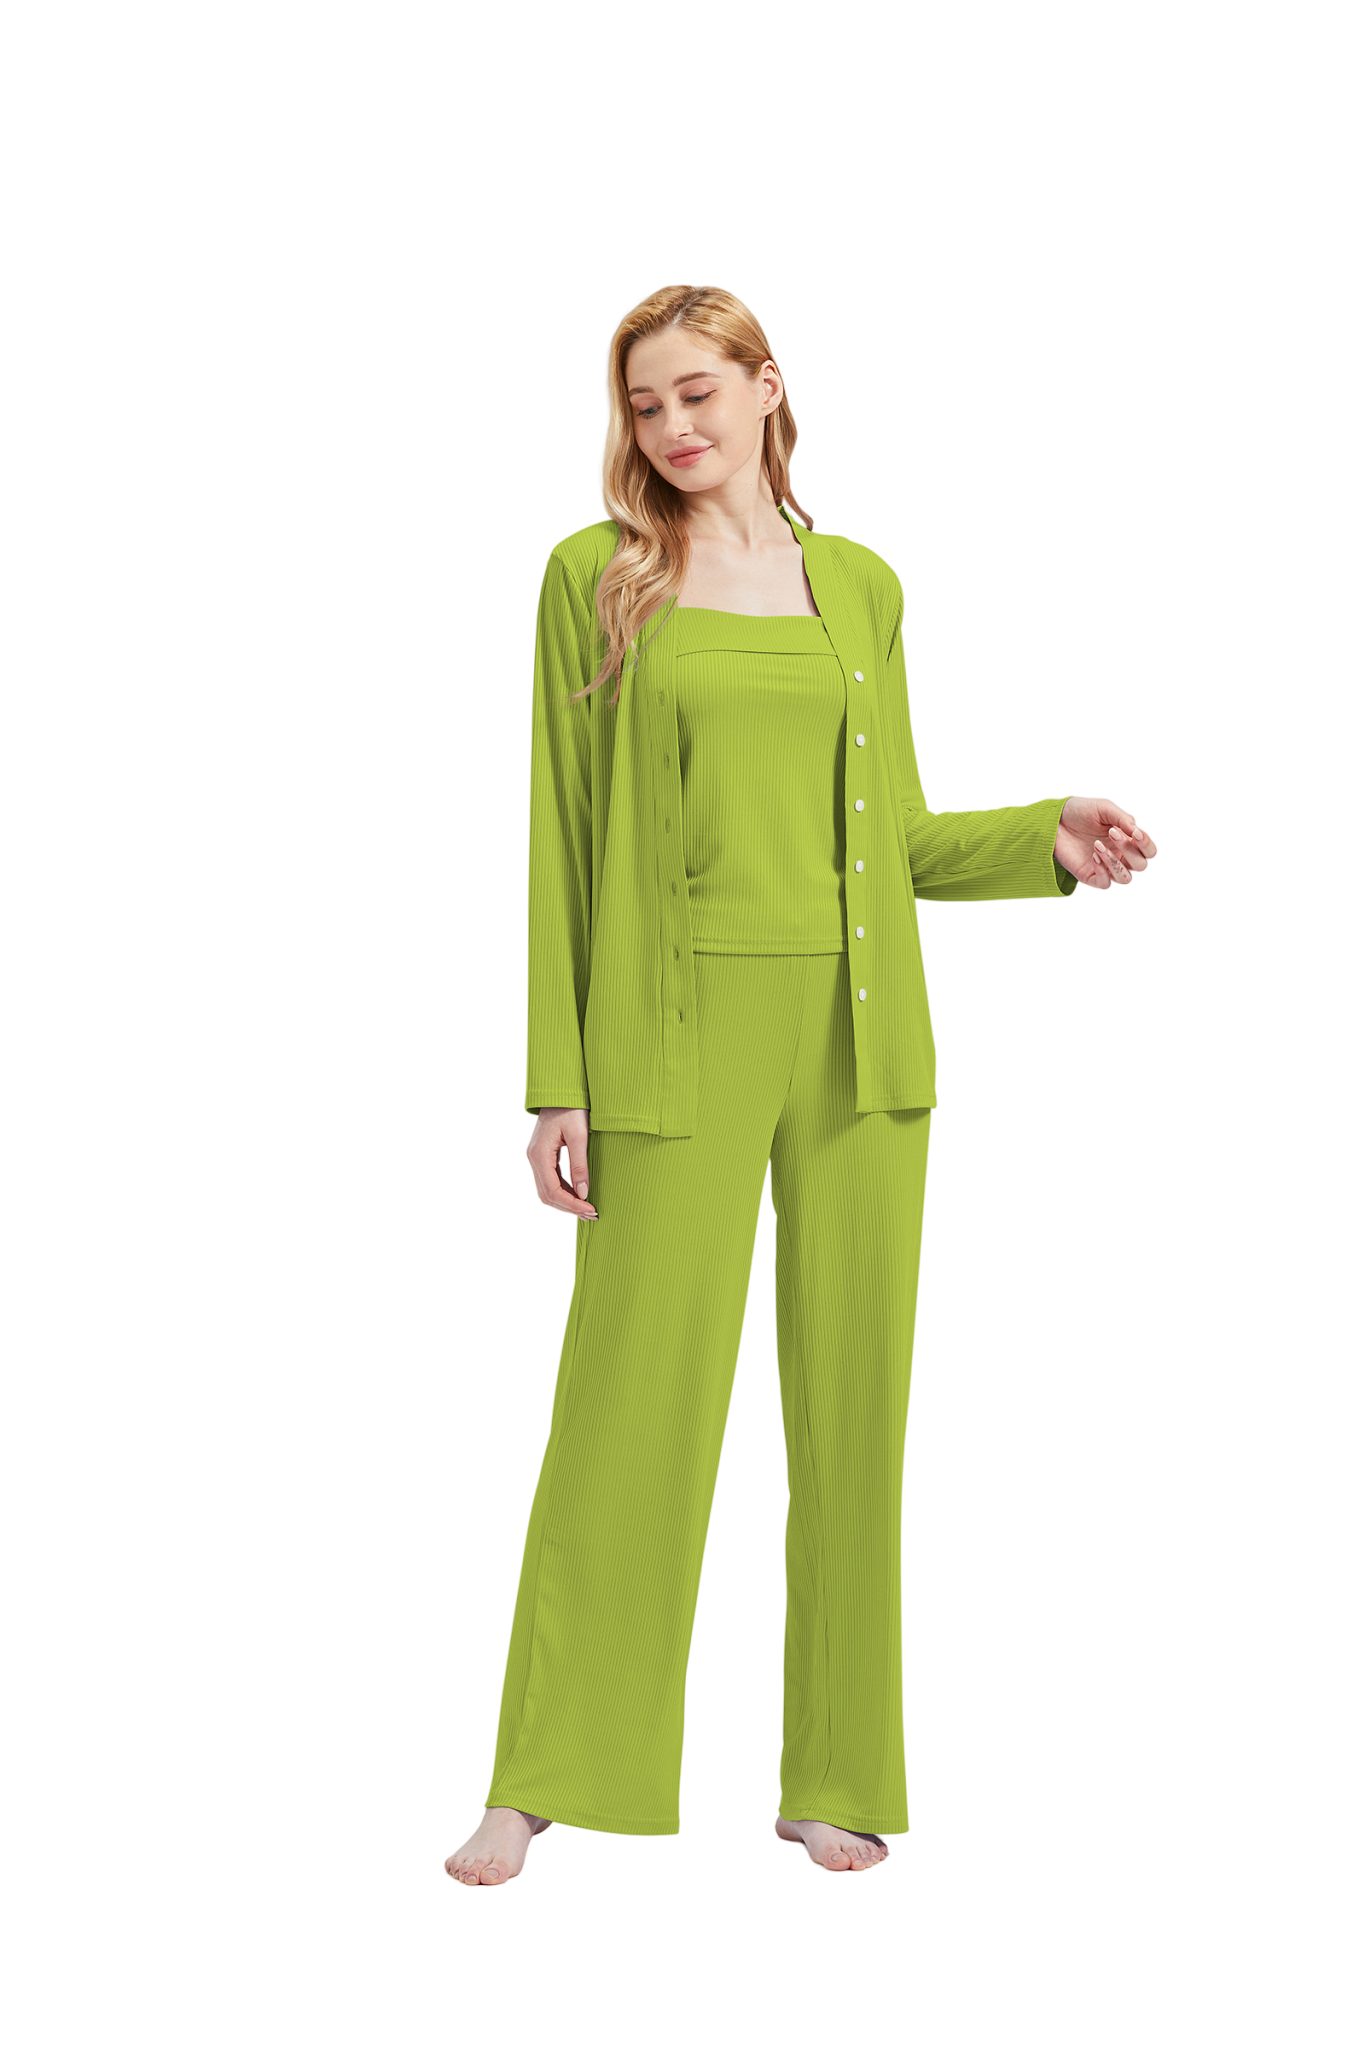 RAIKOU Schlafanzug Damen Pyjama-Set Damenwäsche V-Ausschnitt (Set, 3 tlg) incl.Jacket Top Hose Grün